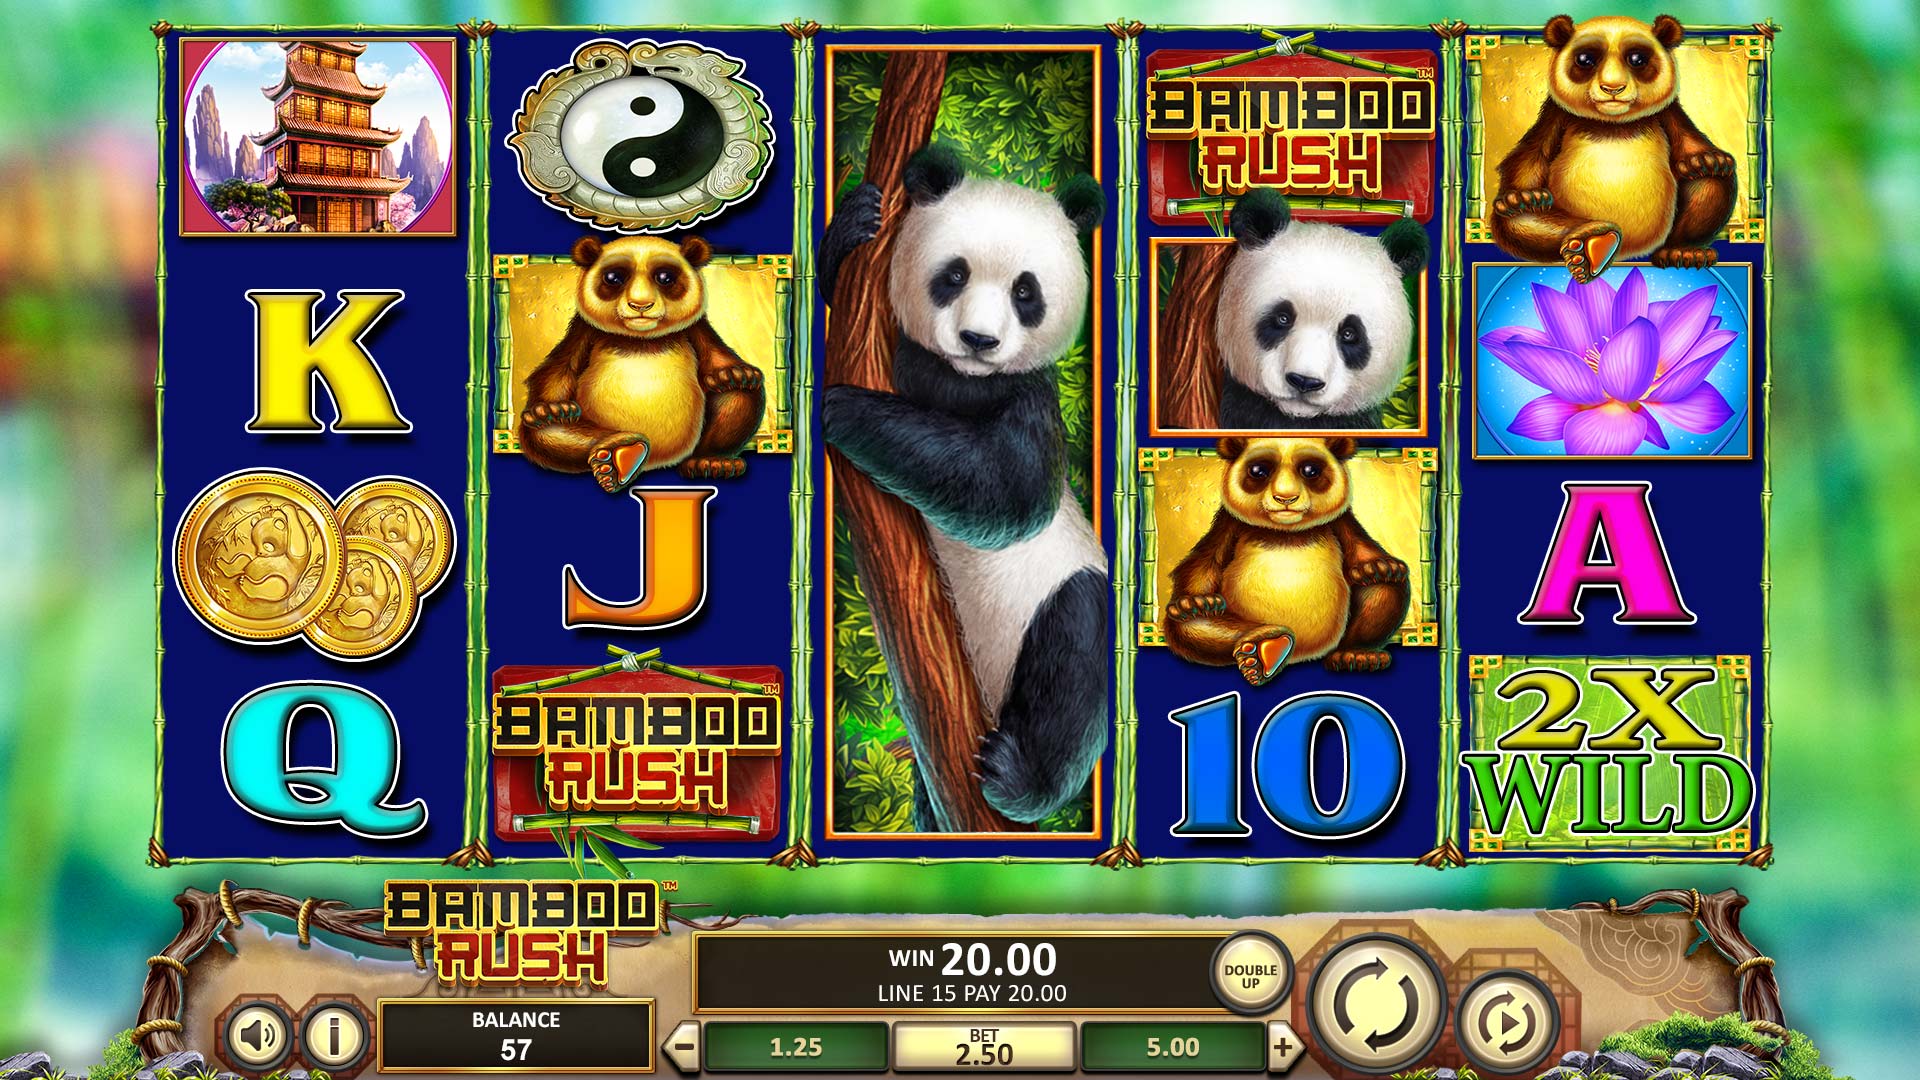 Bamboo Rush - Main Game